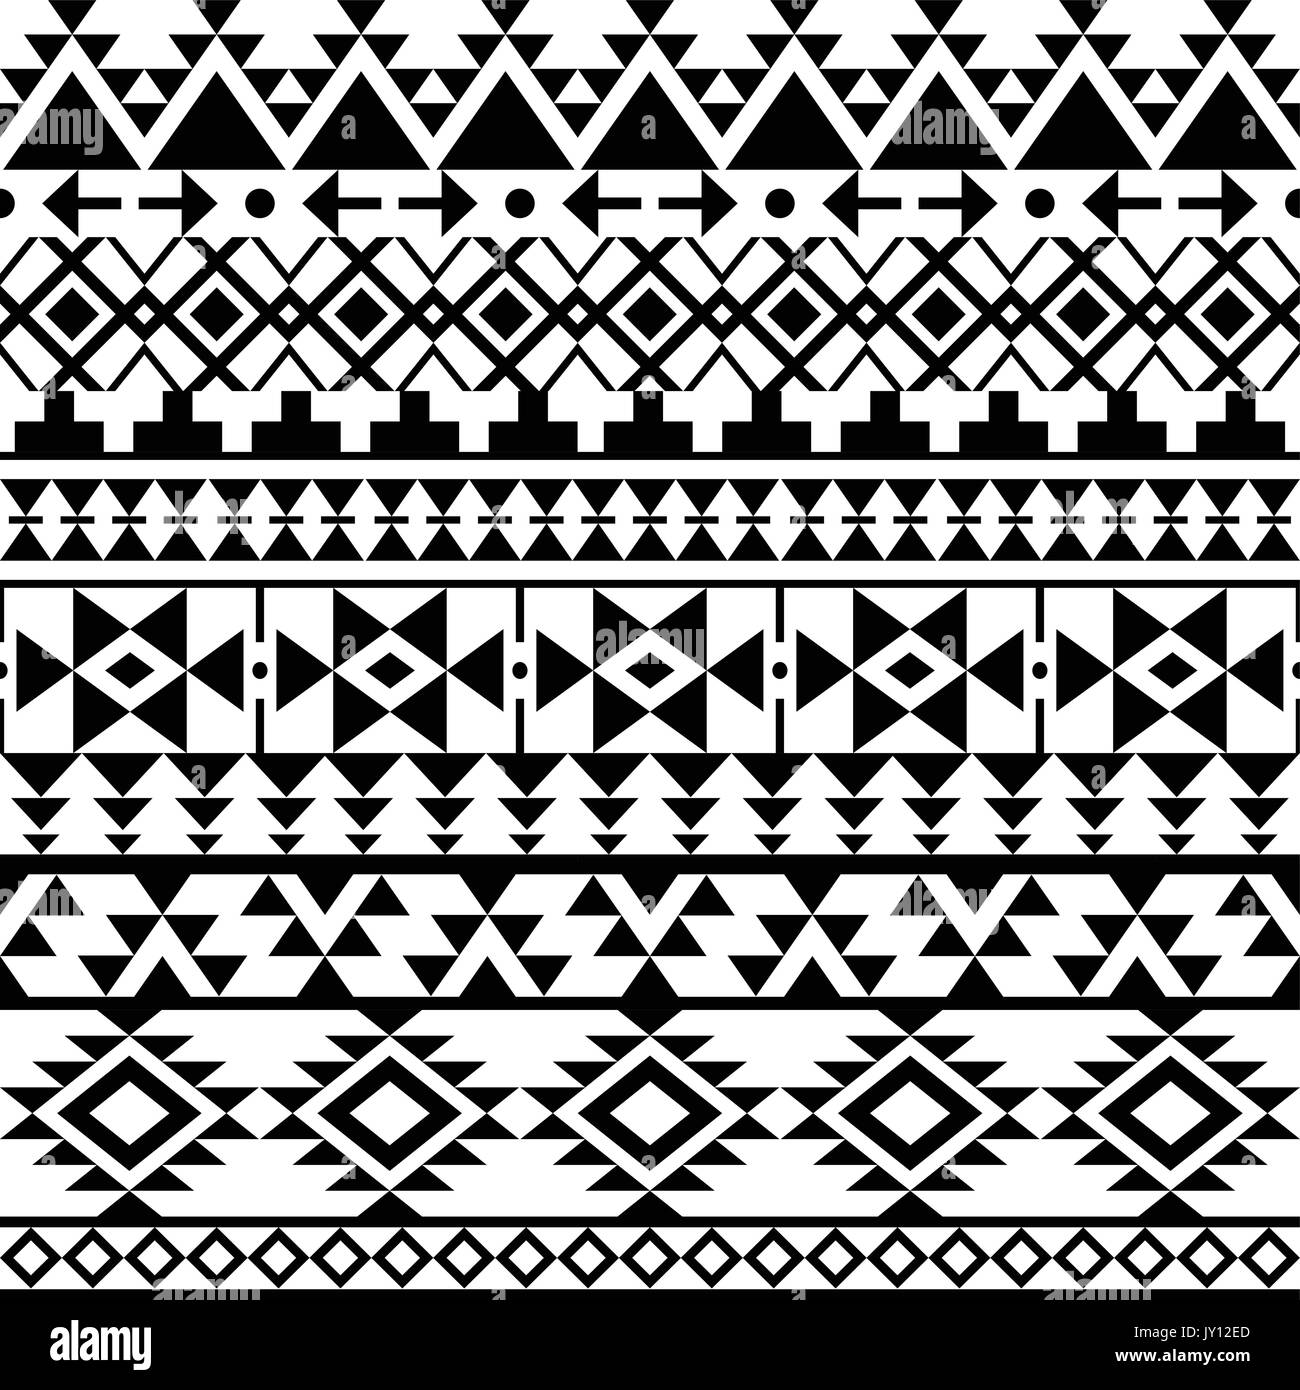 Navajo noir transparente motif aztèque, impression, vecteur de conception Tribal Folk monochrome aztèque sans ornement, collection ethnique, tribal art Illustration de Vecteur